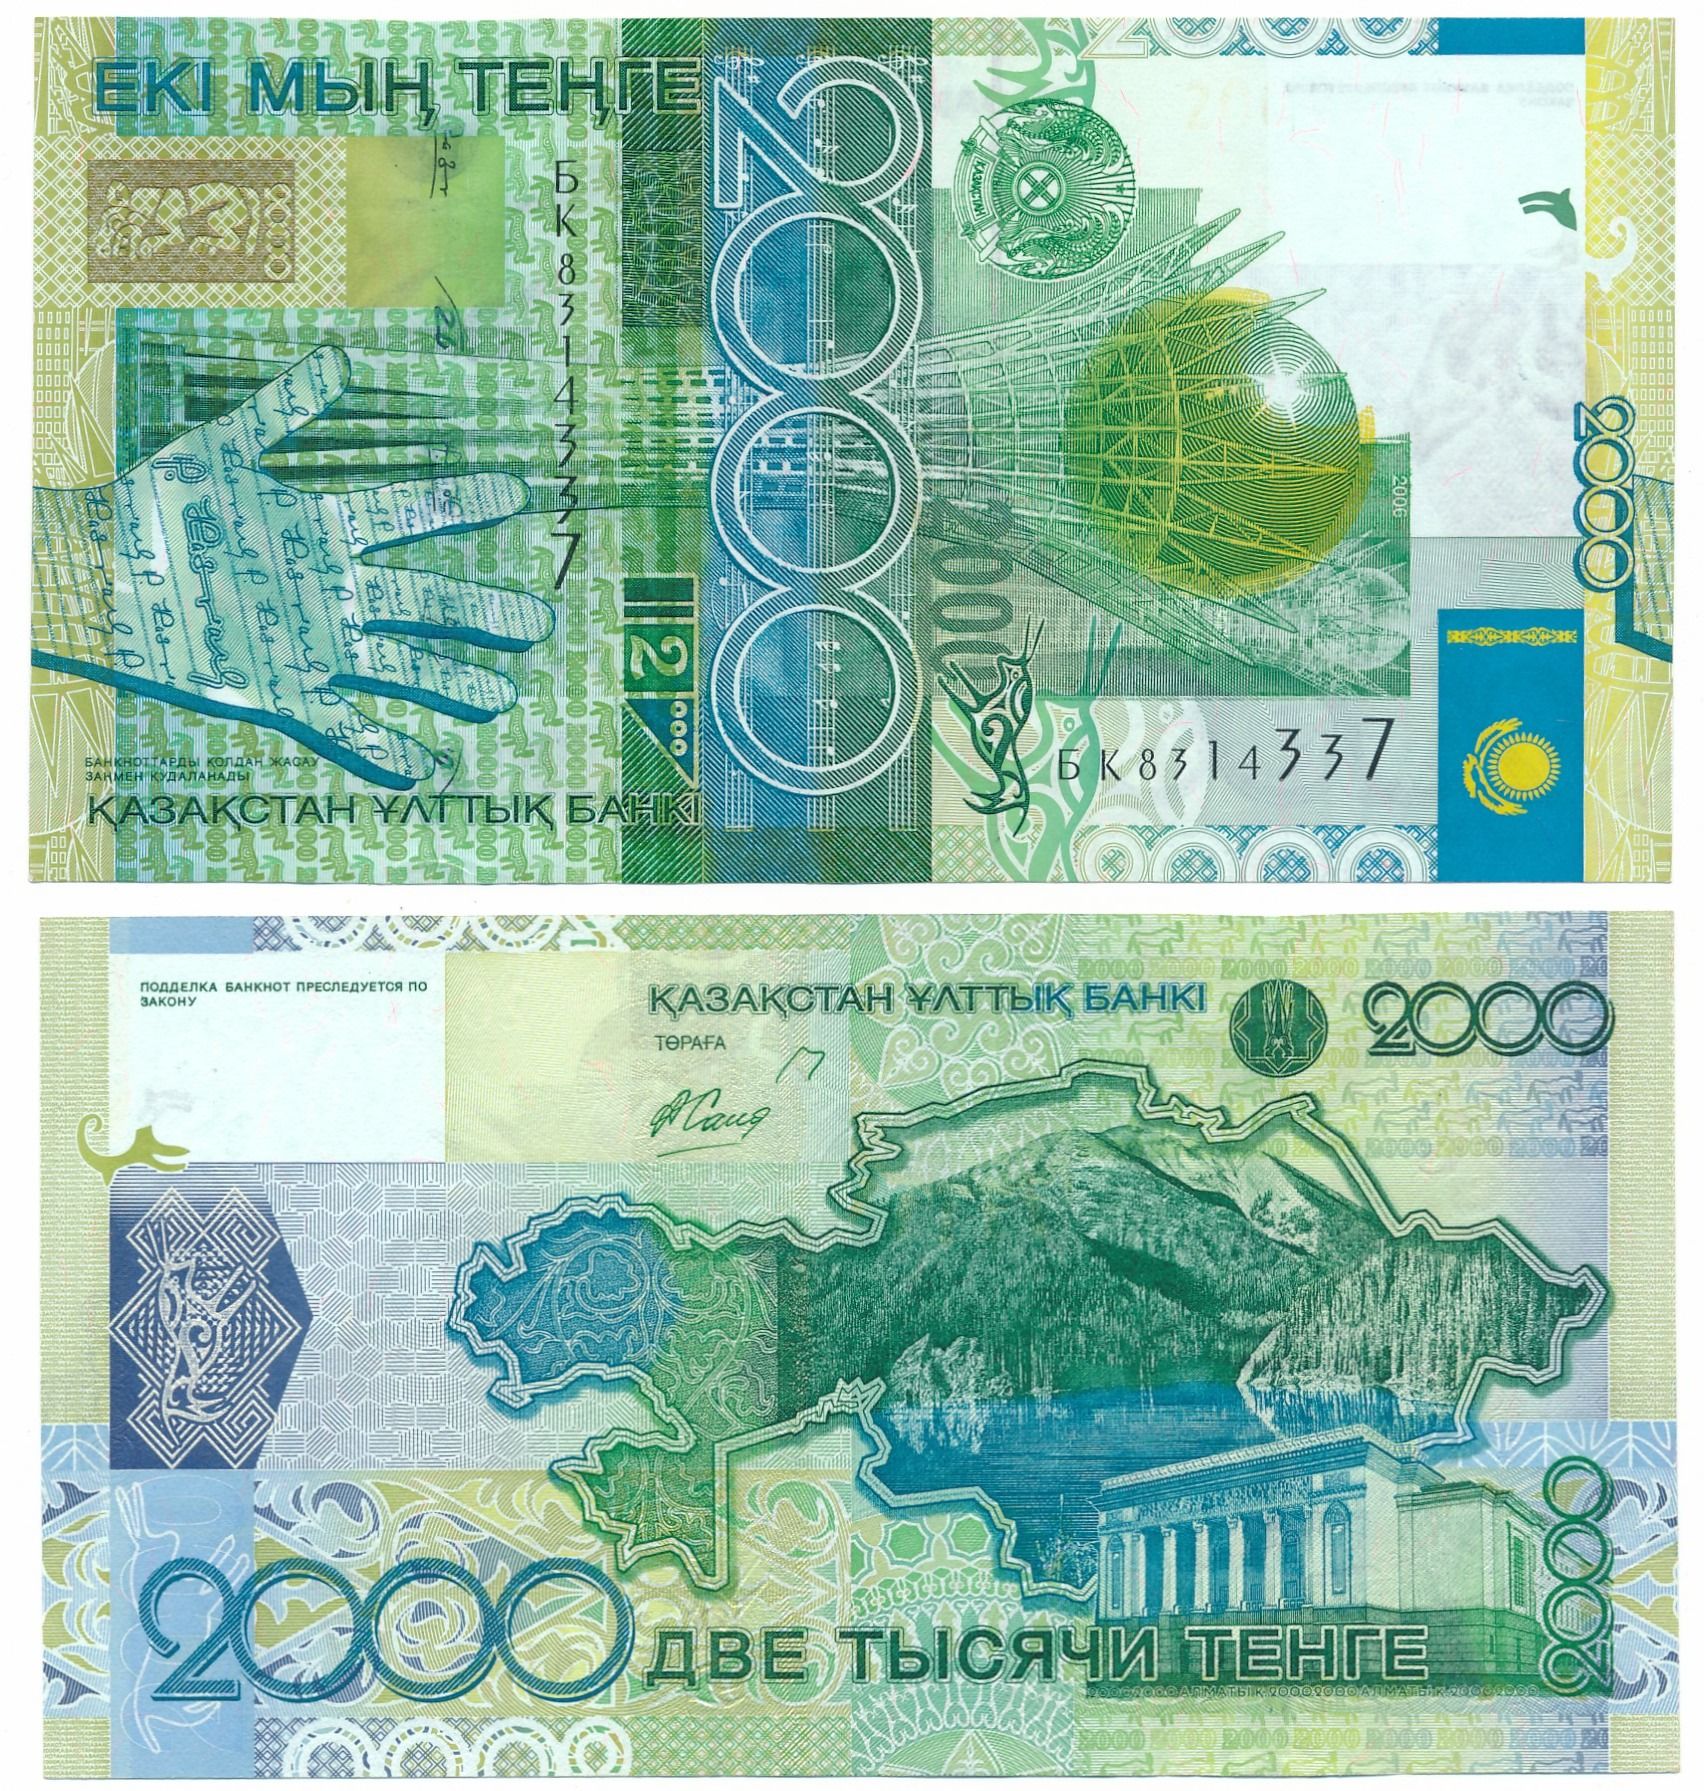 как конвертировать валюту в стим с тенге на рубли фото 85